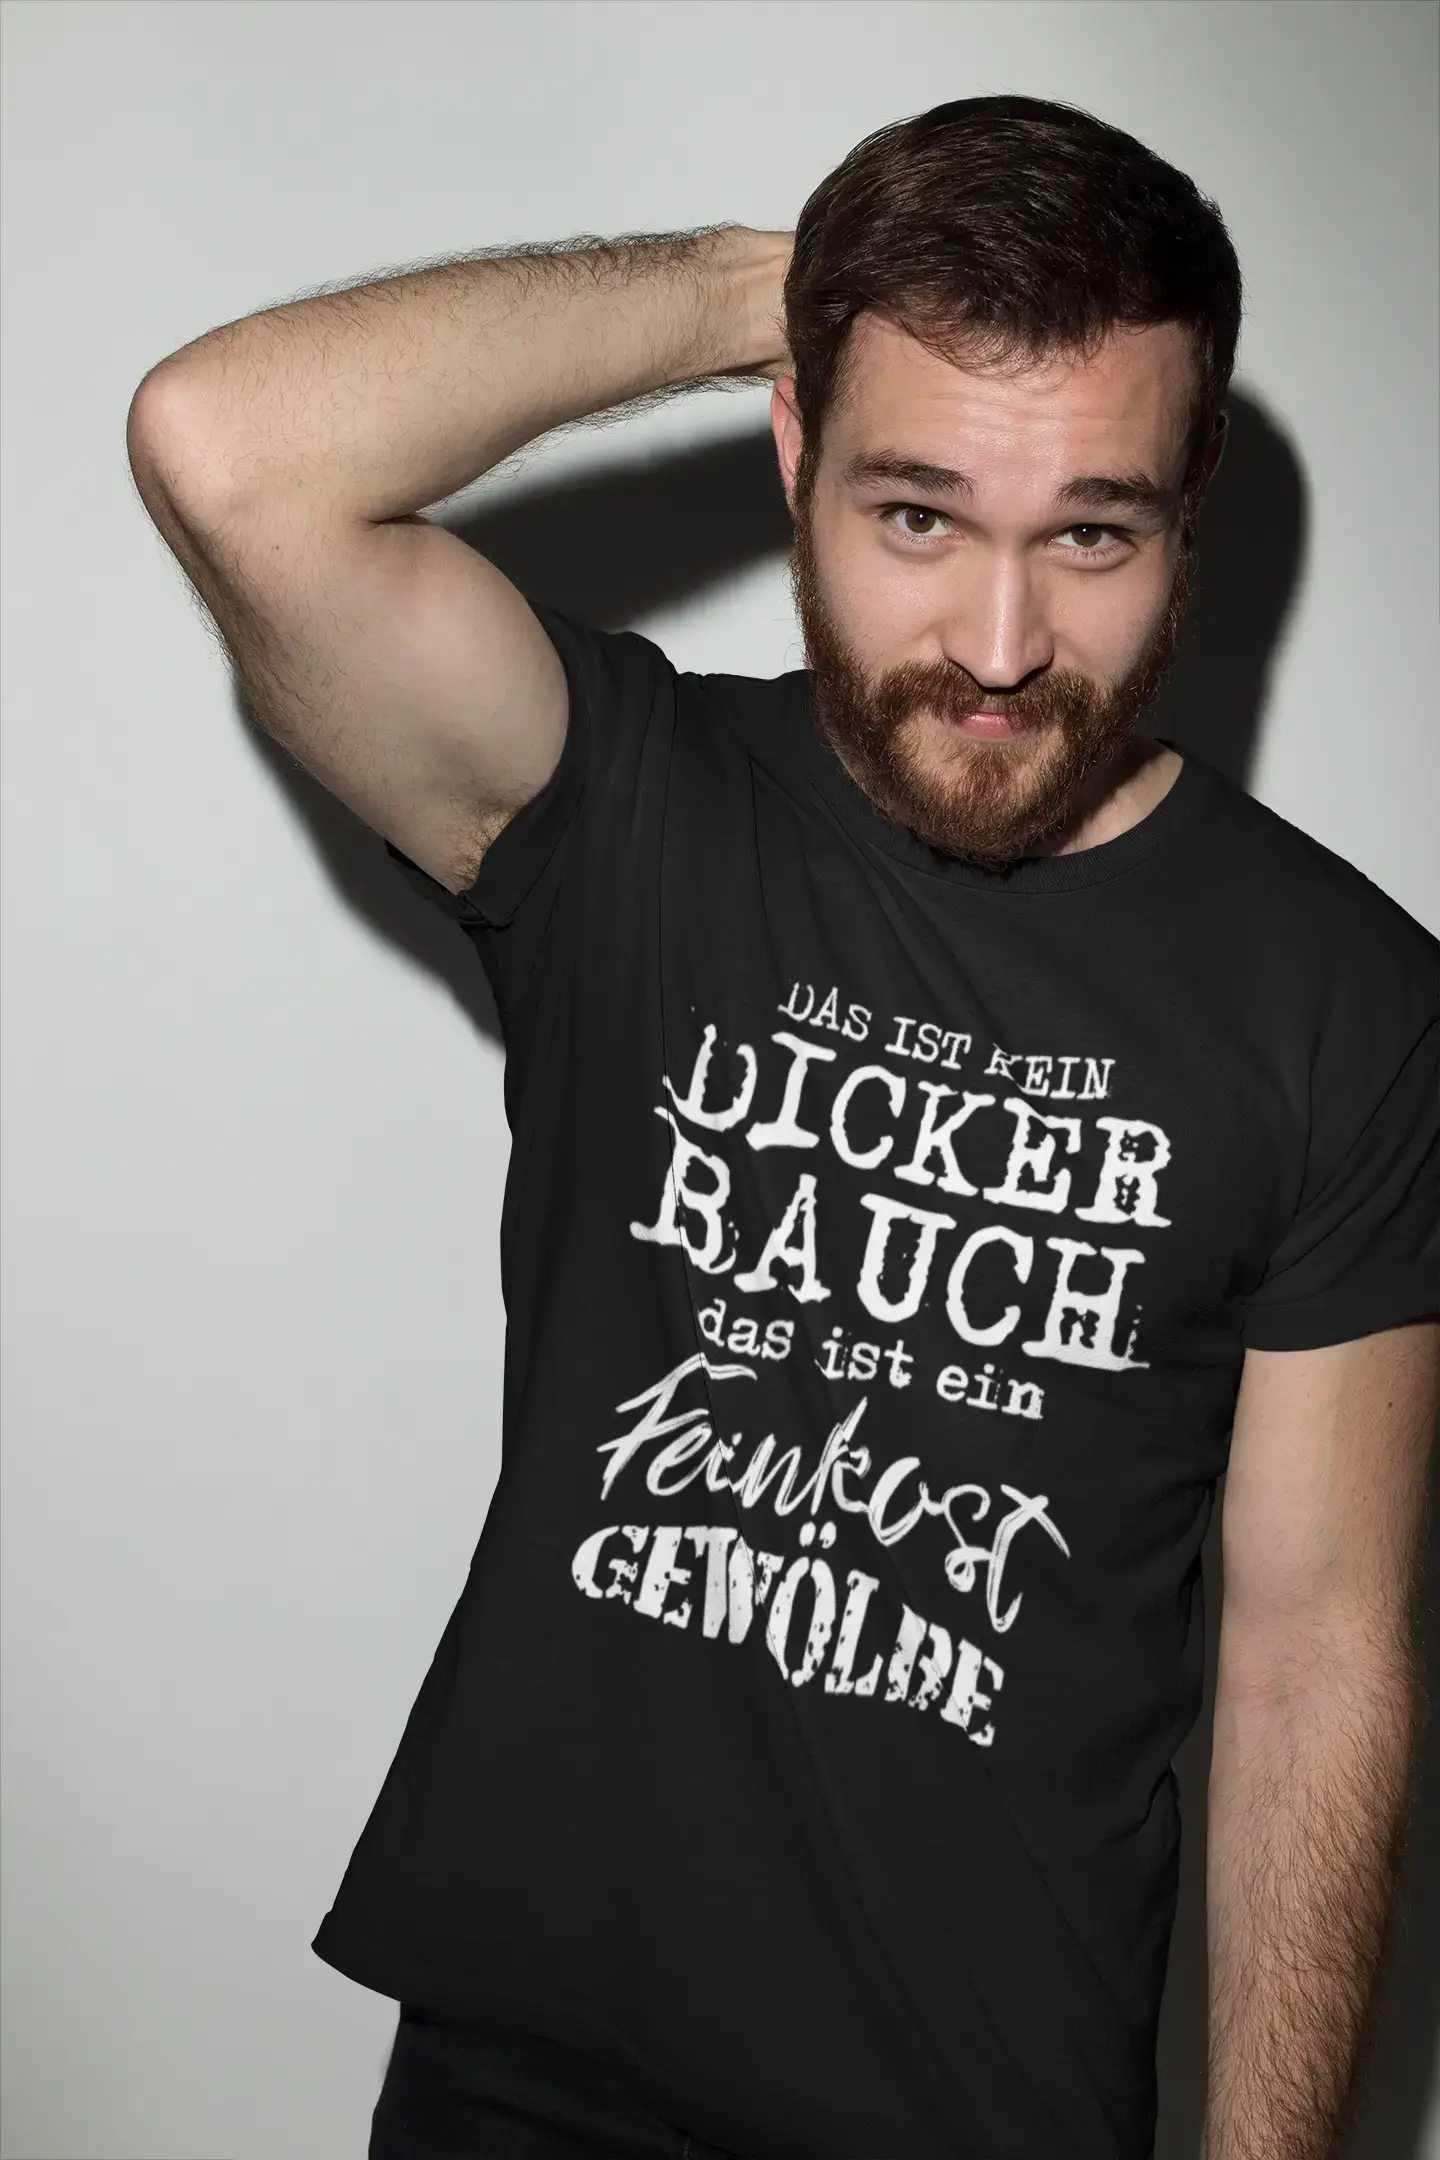 Men's Graphic T-Shirt Das ist kein dicker Bauch-Feinkostgewölbe Gift Idea